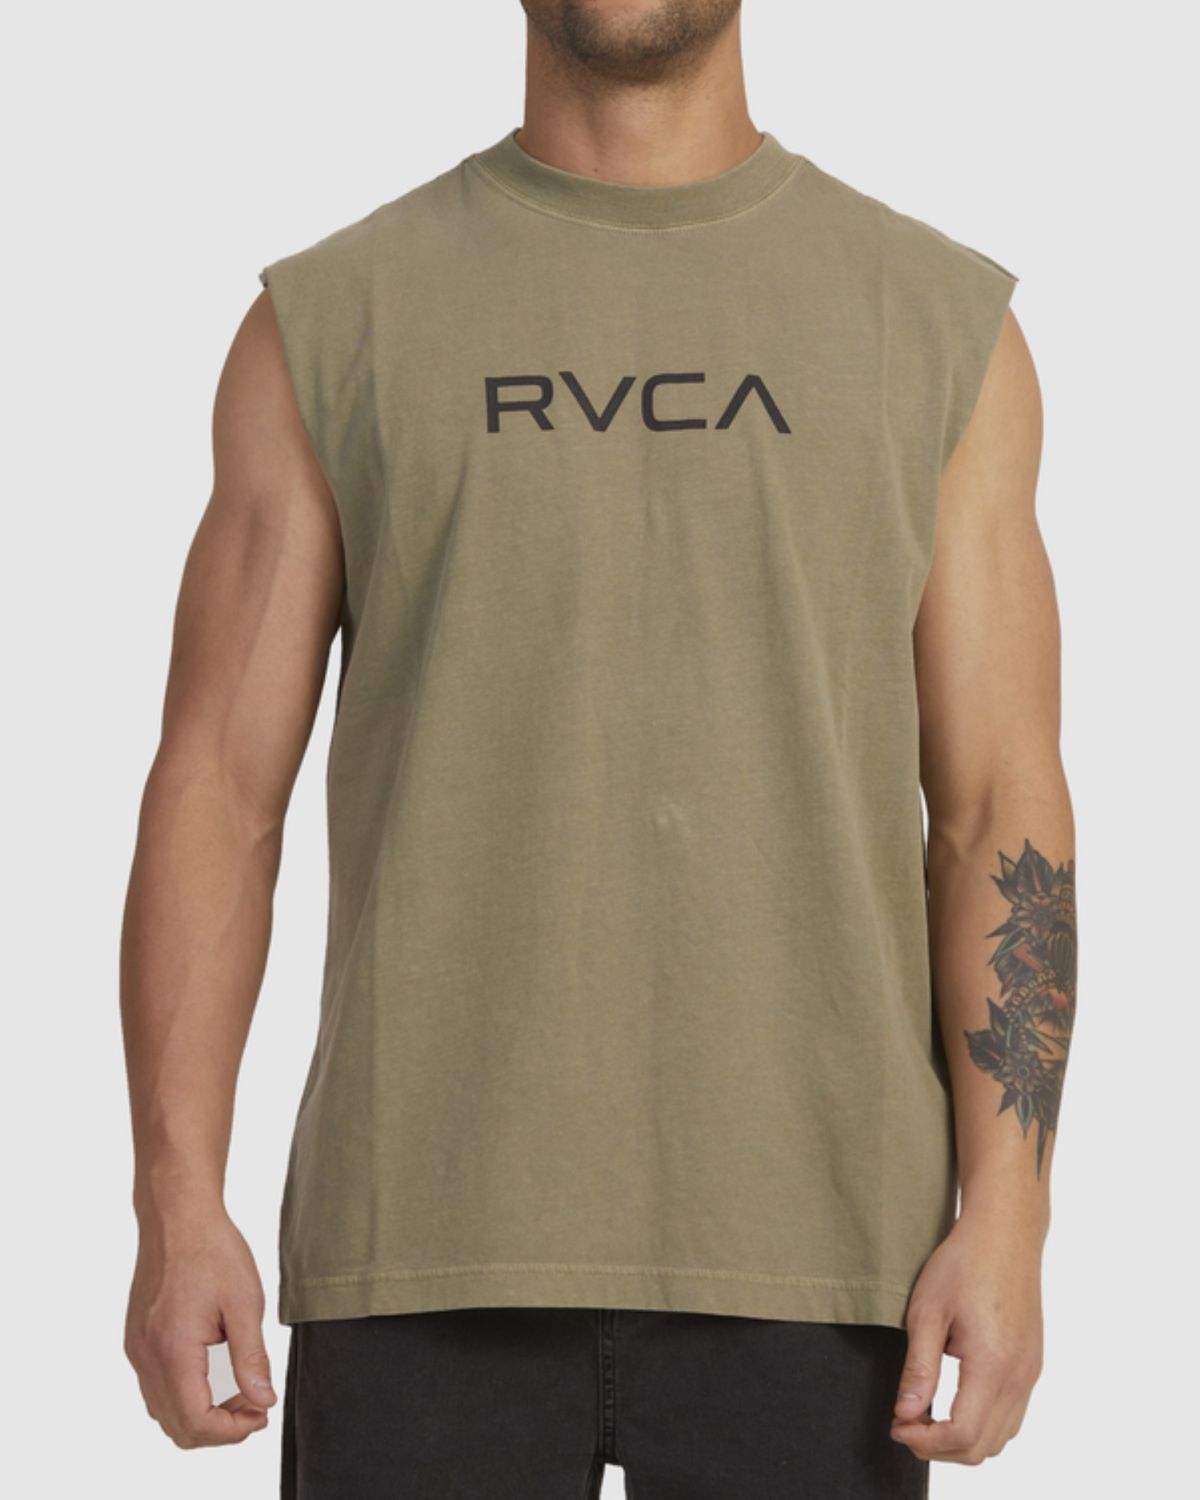  גופיית ווש עם הדפס לוגו של RVCA